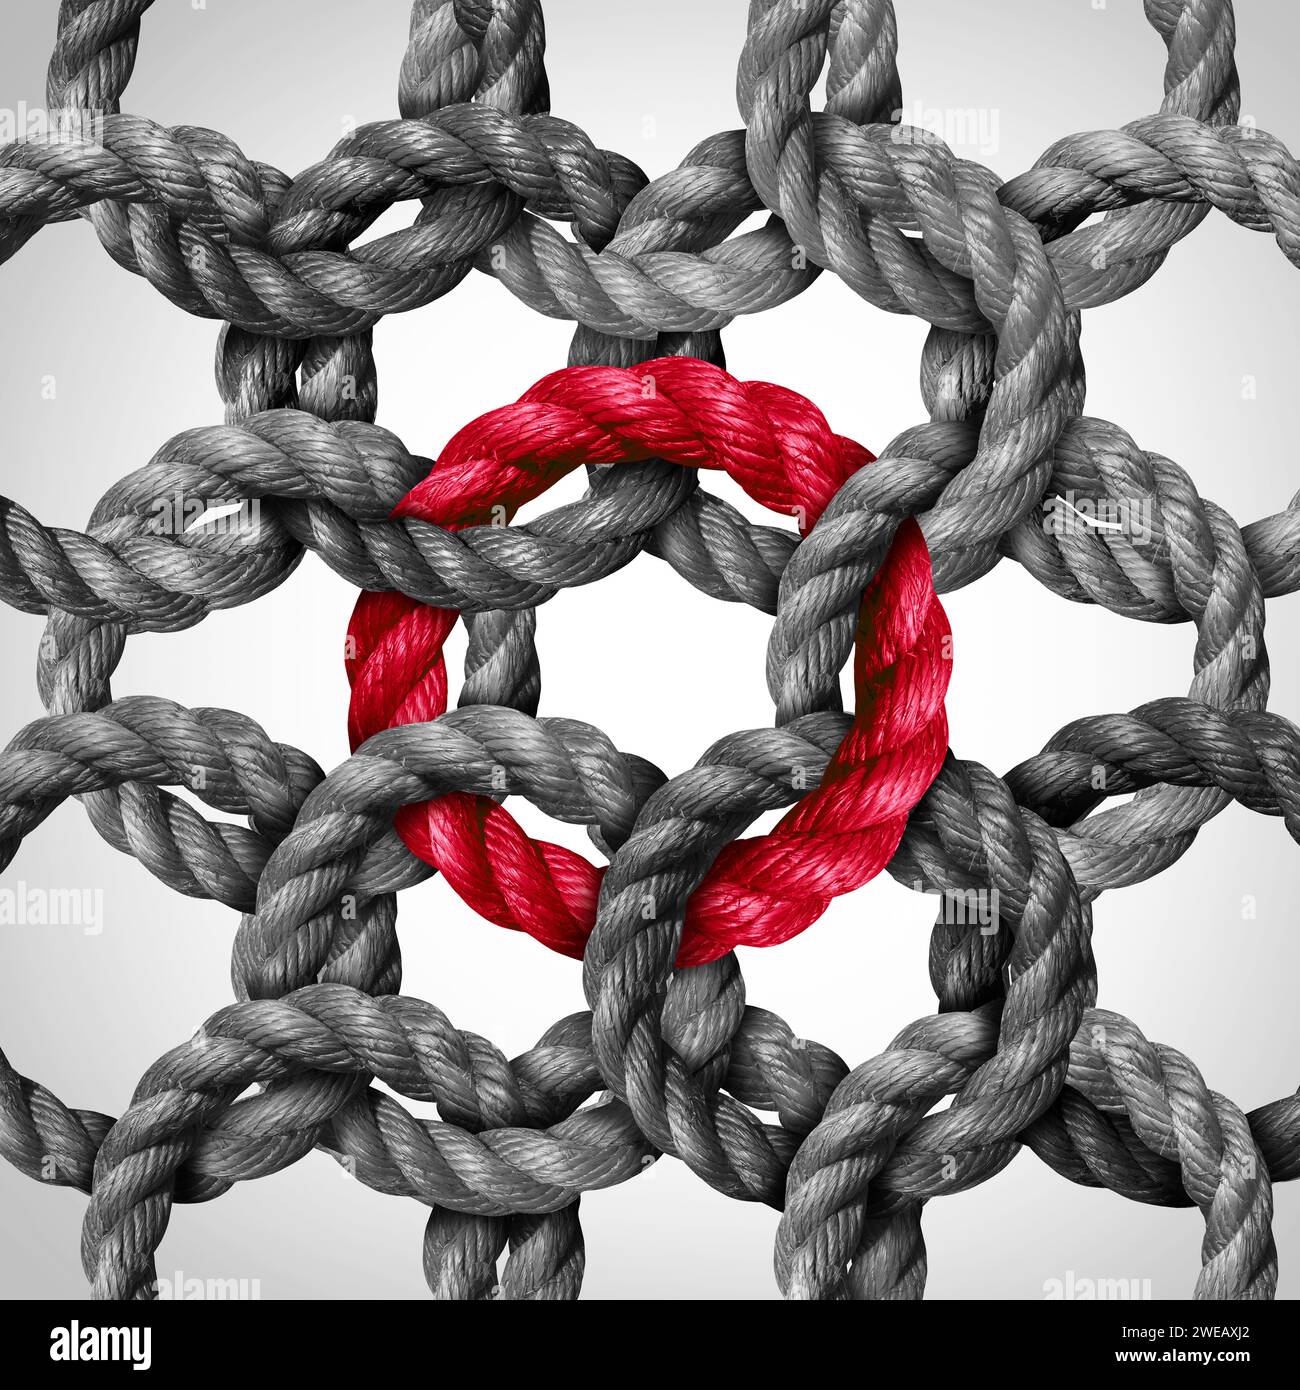 Zentrales Verbindungskonzept und Vernetzung oder Schlüsselnetzverbindung als Geschäftsmetapher mit einer Gruppe von Kreisseilen, die mit einer roten Seilschlaufe verbunden sind Stockfoto